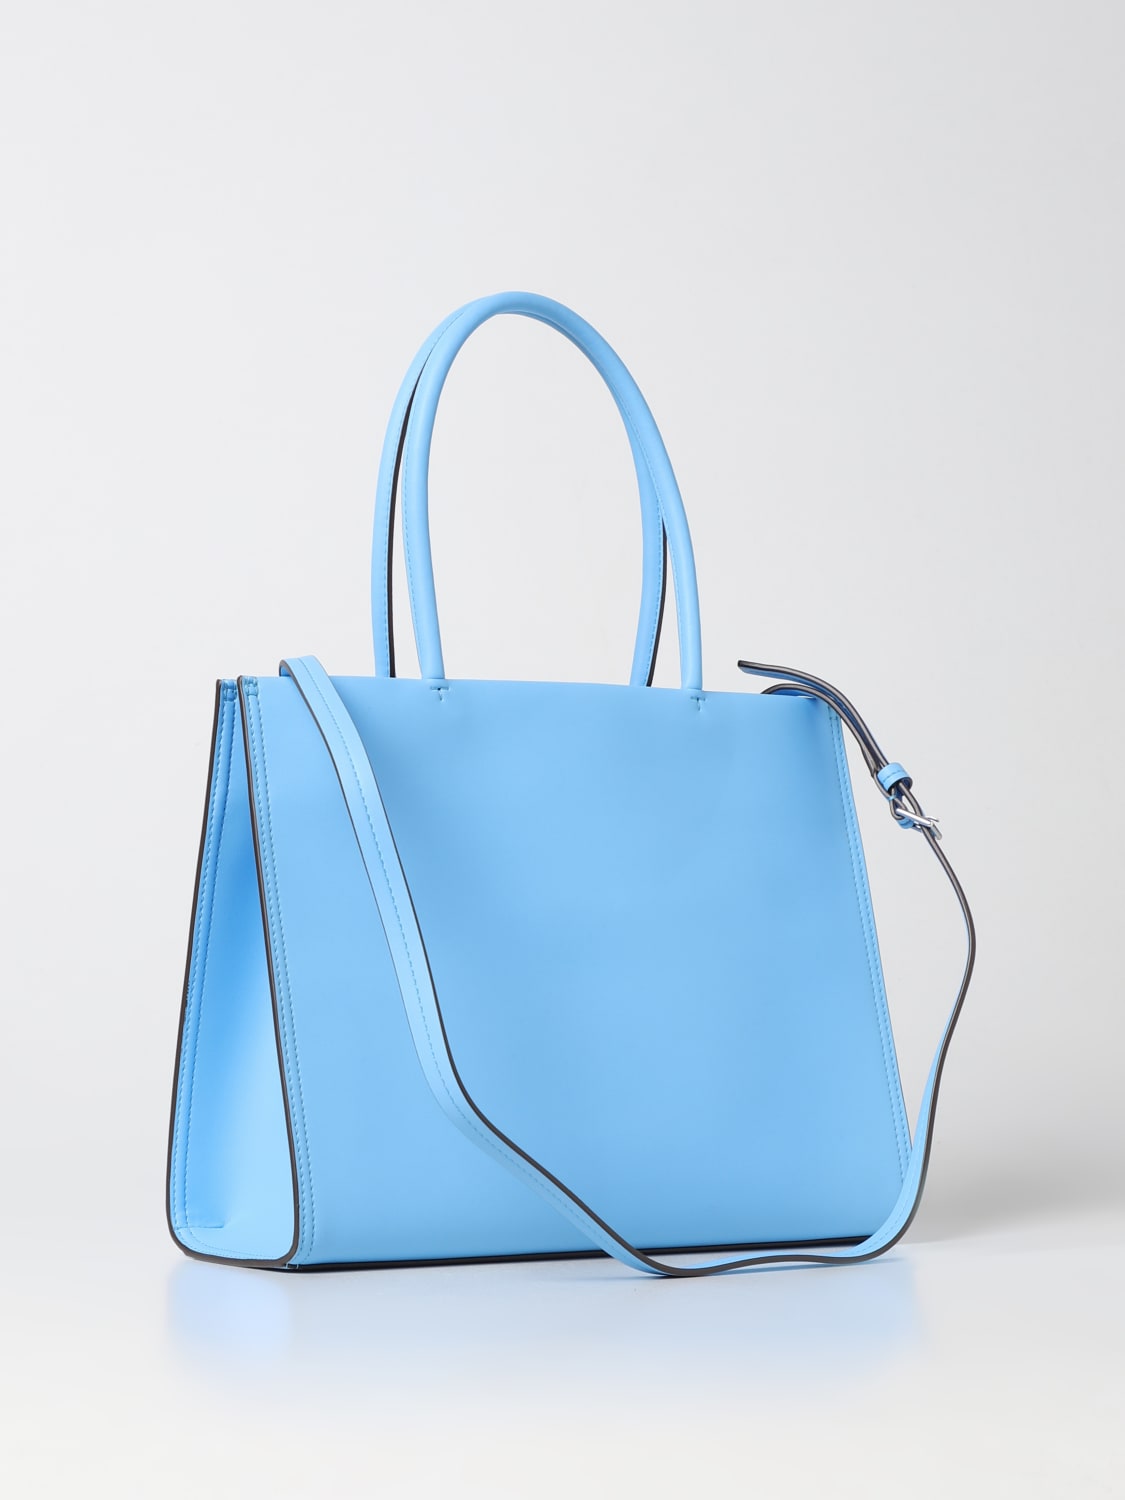 Tory Burch - Women's Ella Bio Small Tote Bag - Blue - Leather